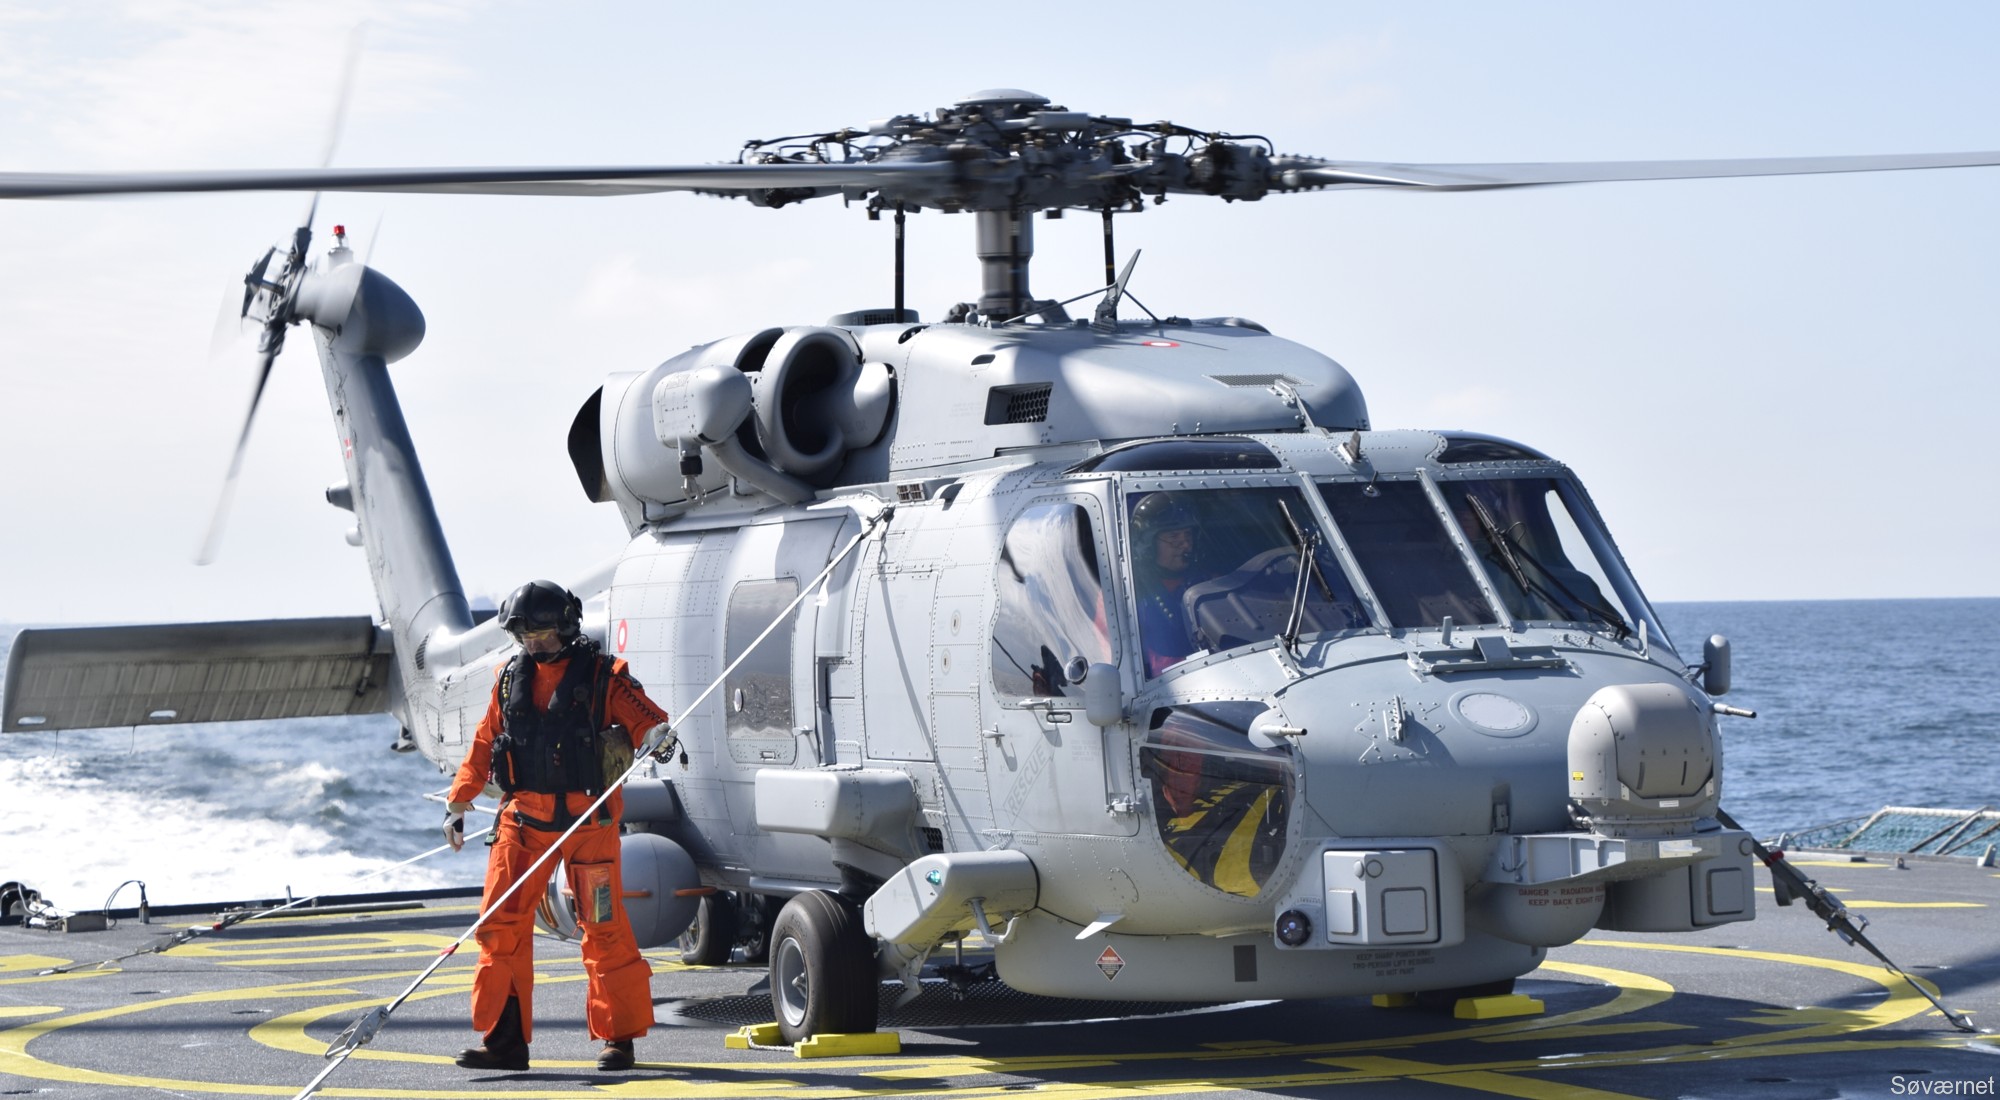 mh-60r seahawk royal danish navy air force flyvevåbnet kongelige danske marine sikorsky helicopter 723 eskadrille squadron karup 05